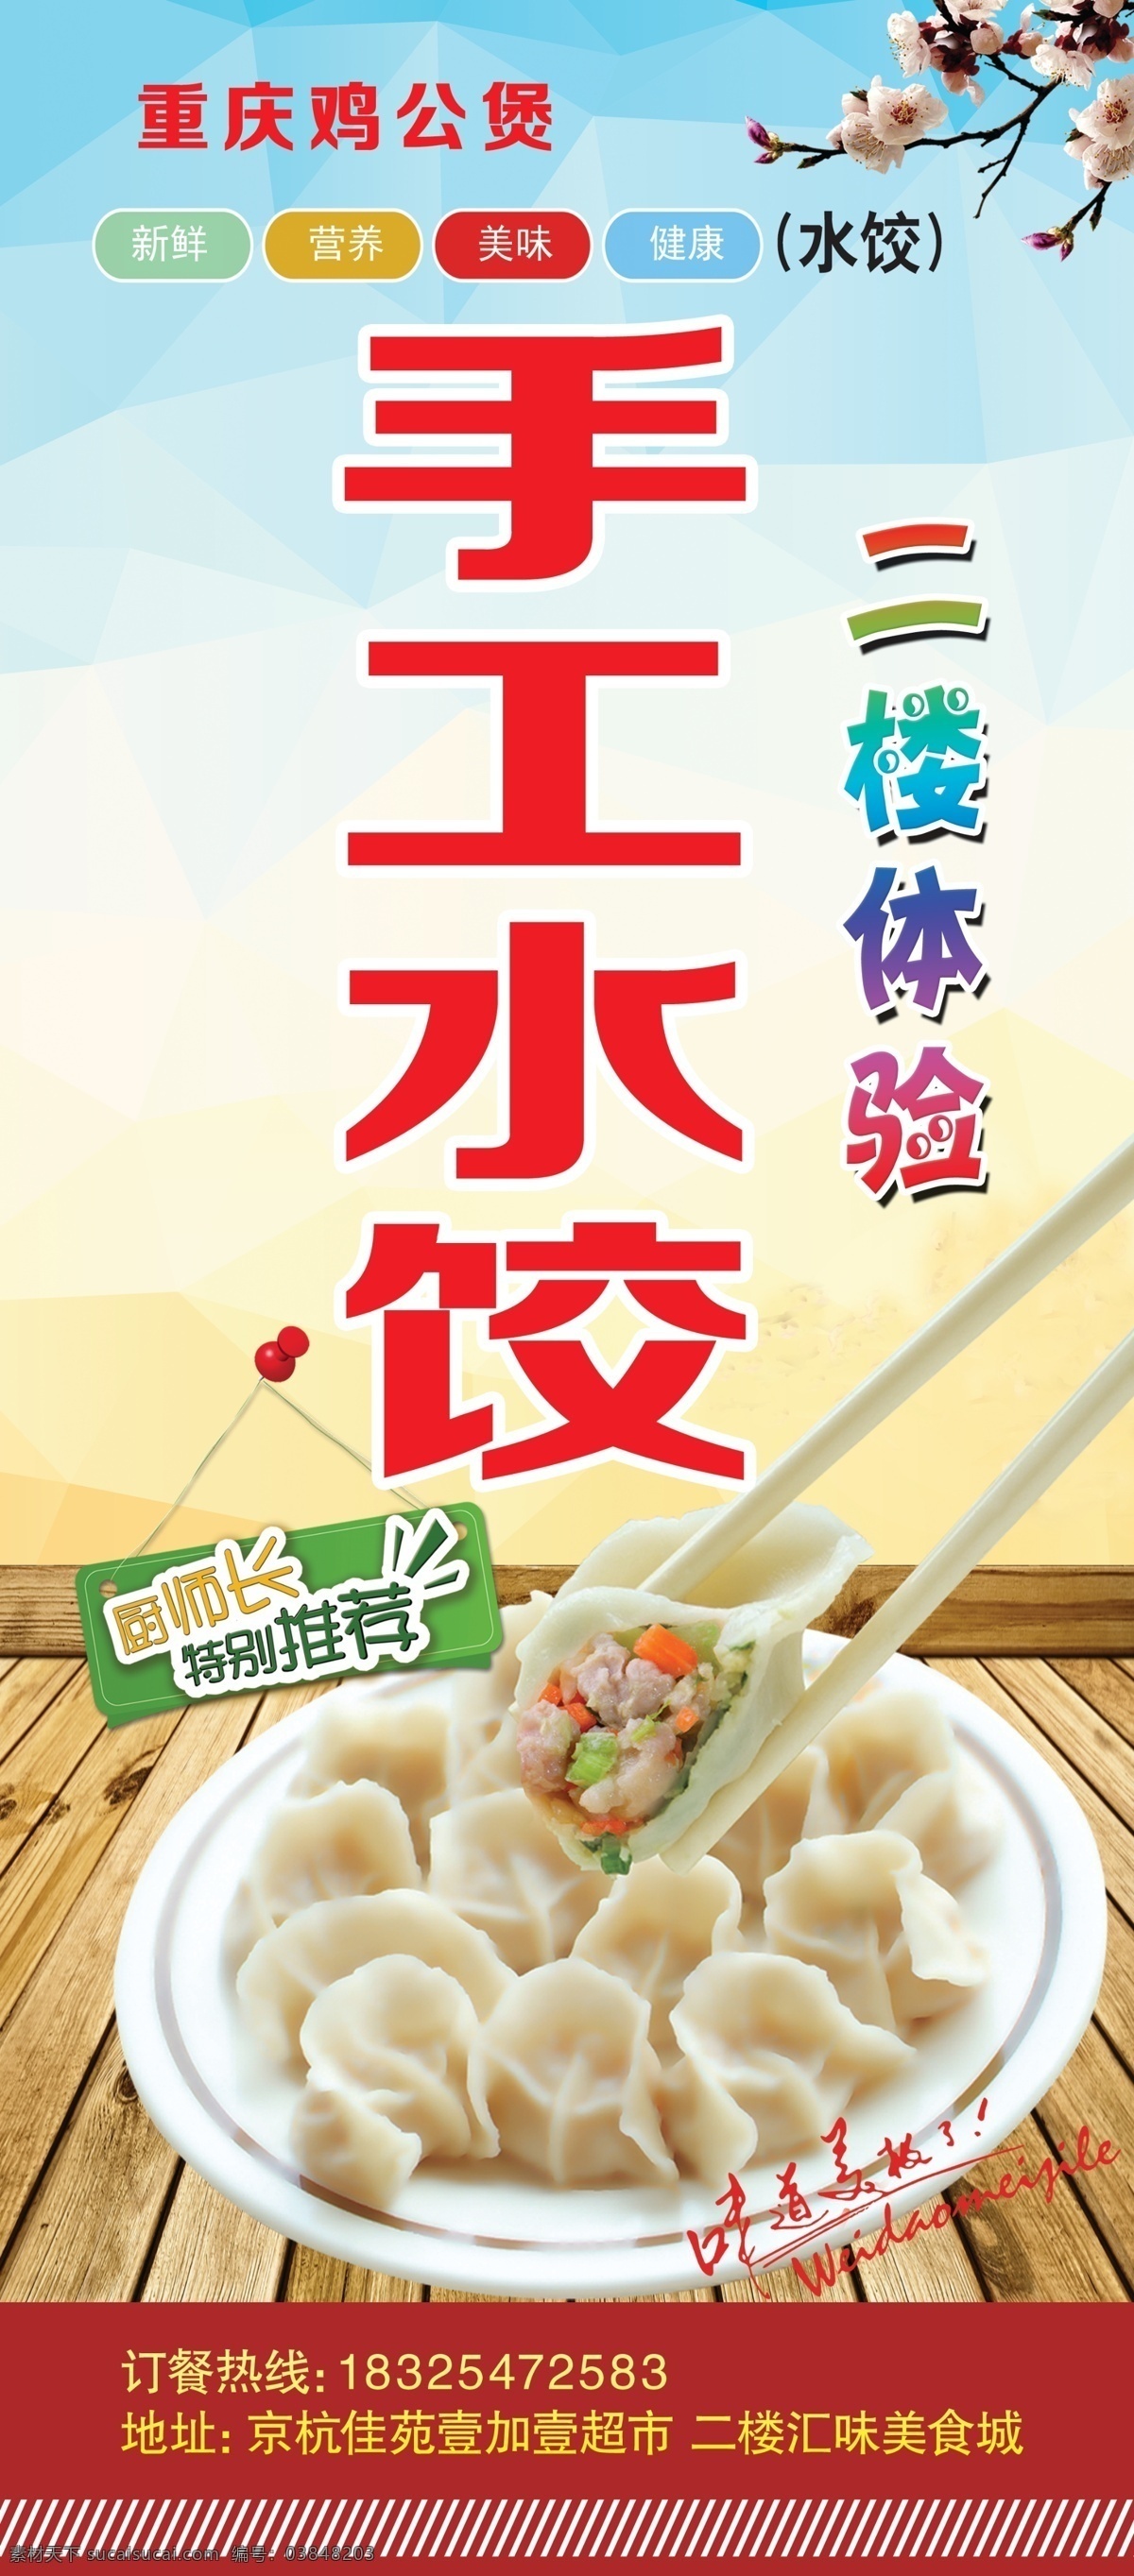 手工水饺 饺子 小吃 美食 水饺 写真画册